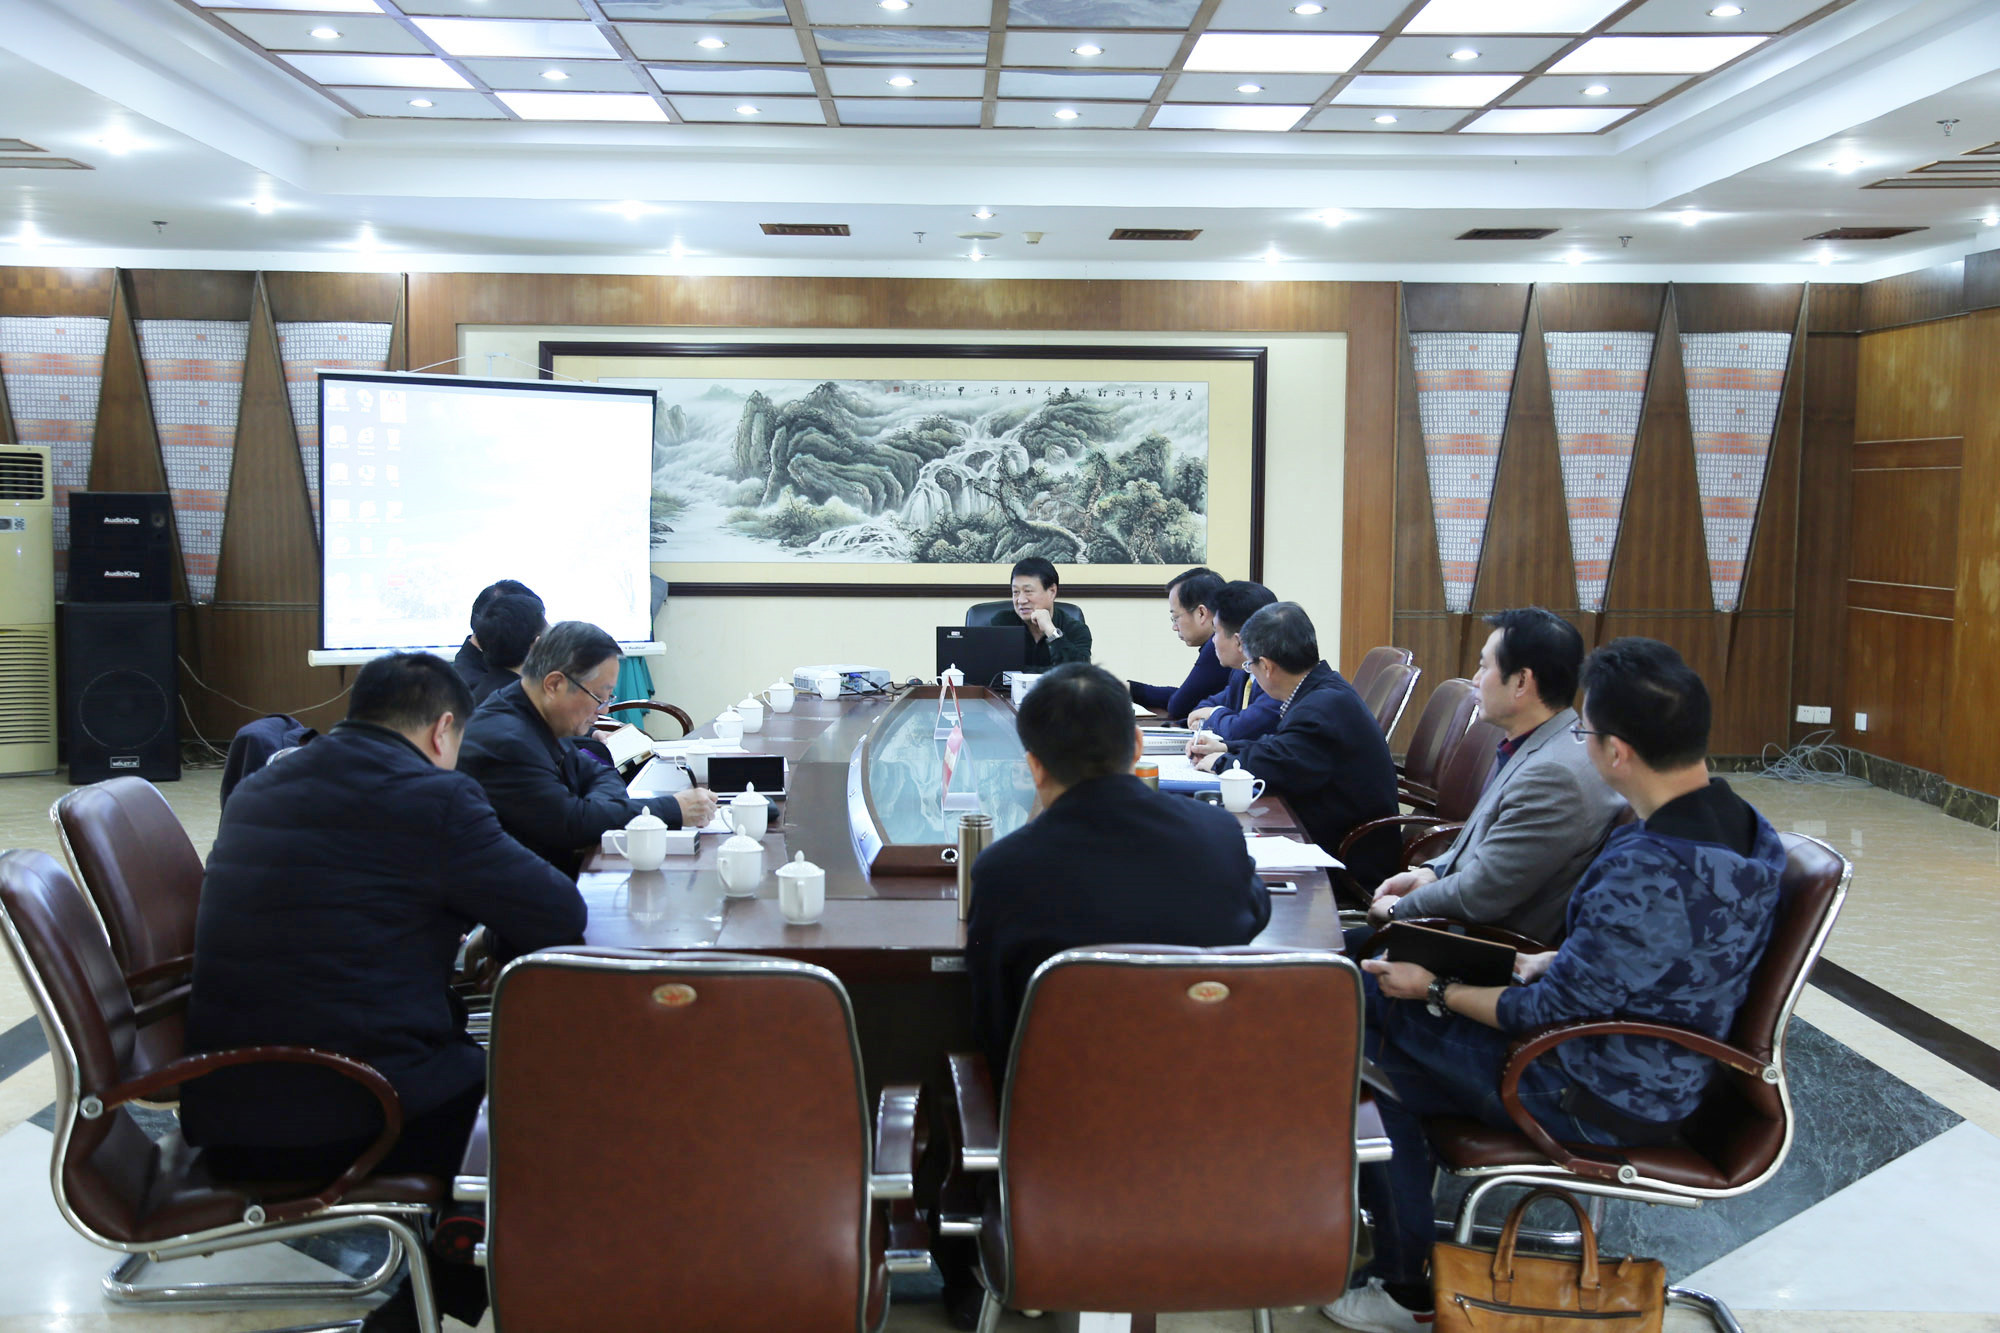 研究院领导与山西忻州代表座谈，了解该地区名师工作室发展面临的问题和需求。